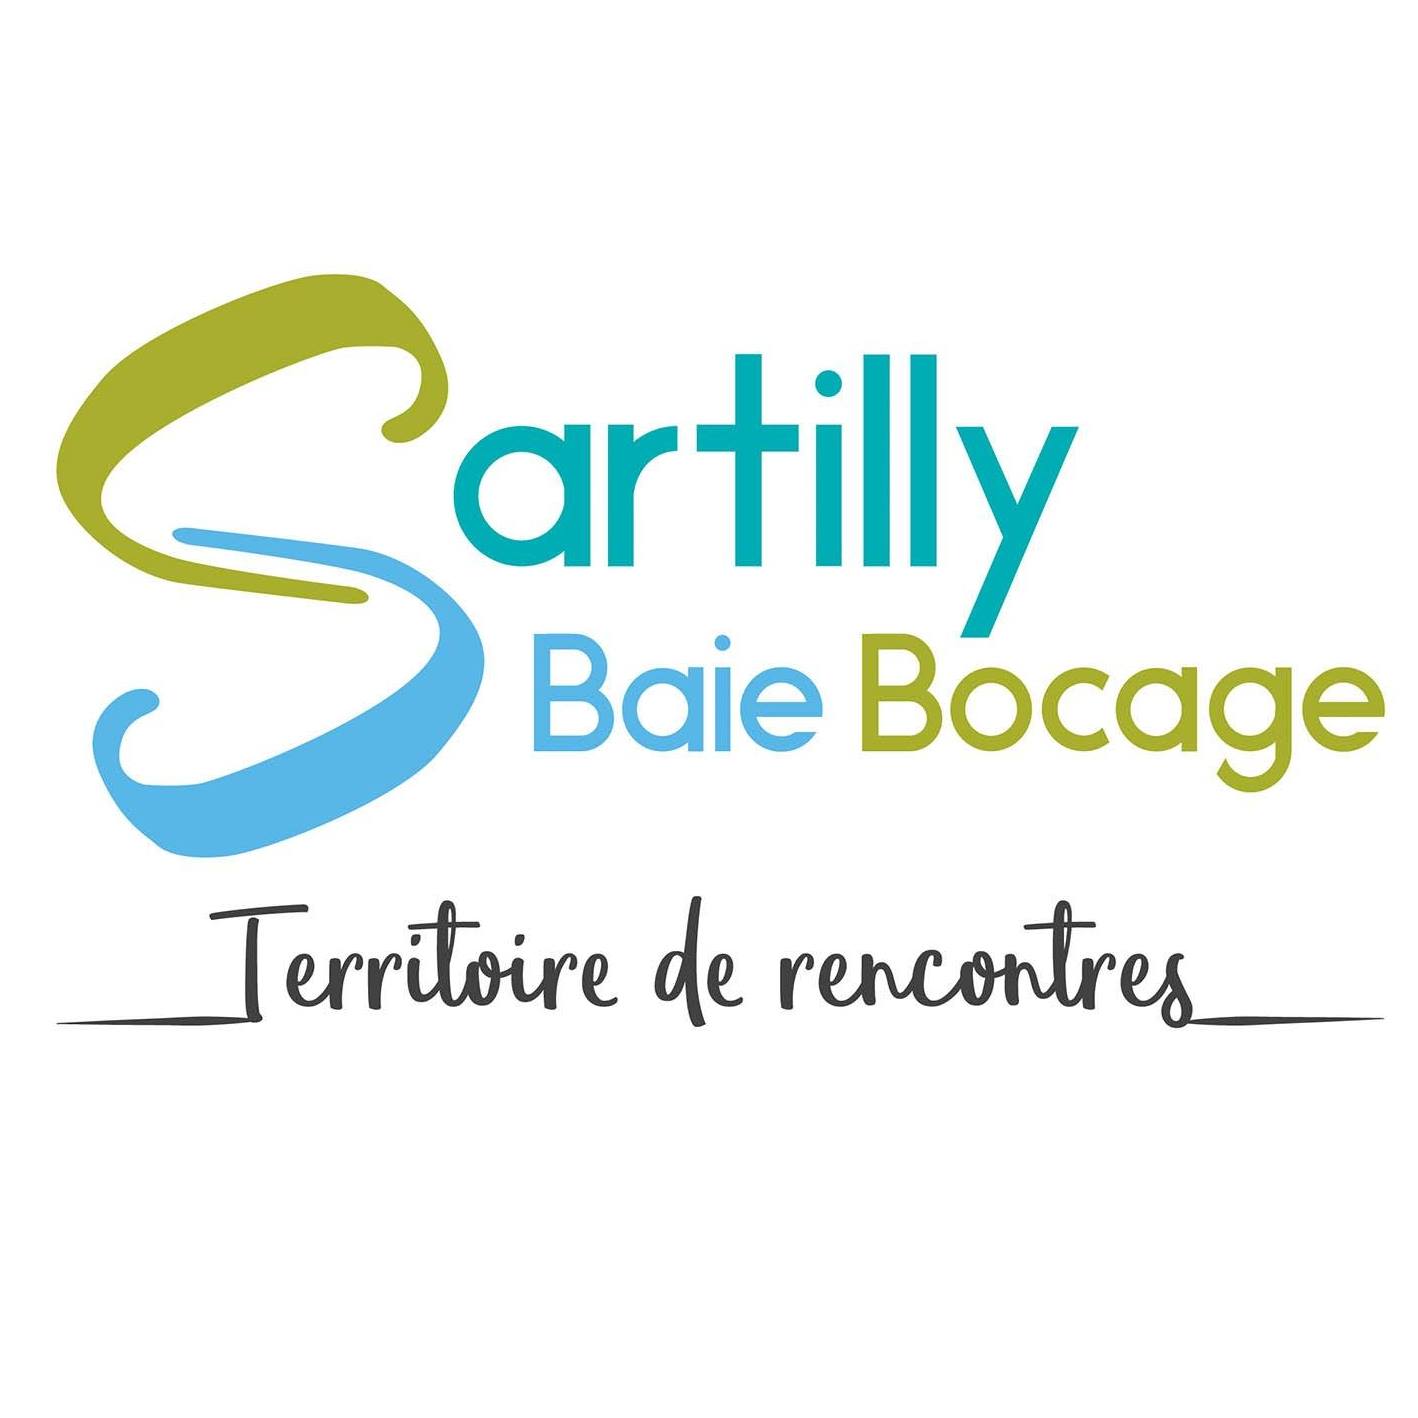 Sartilly logo